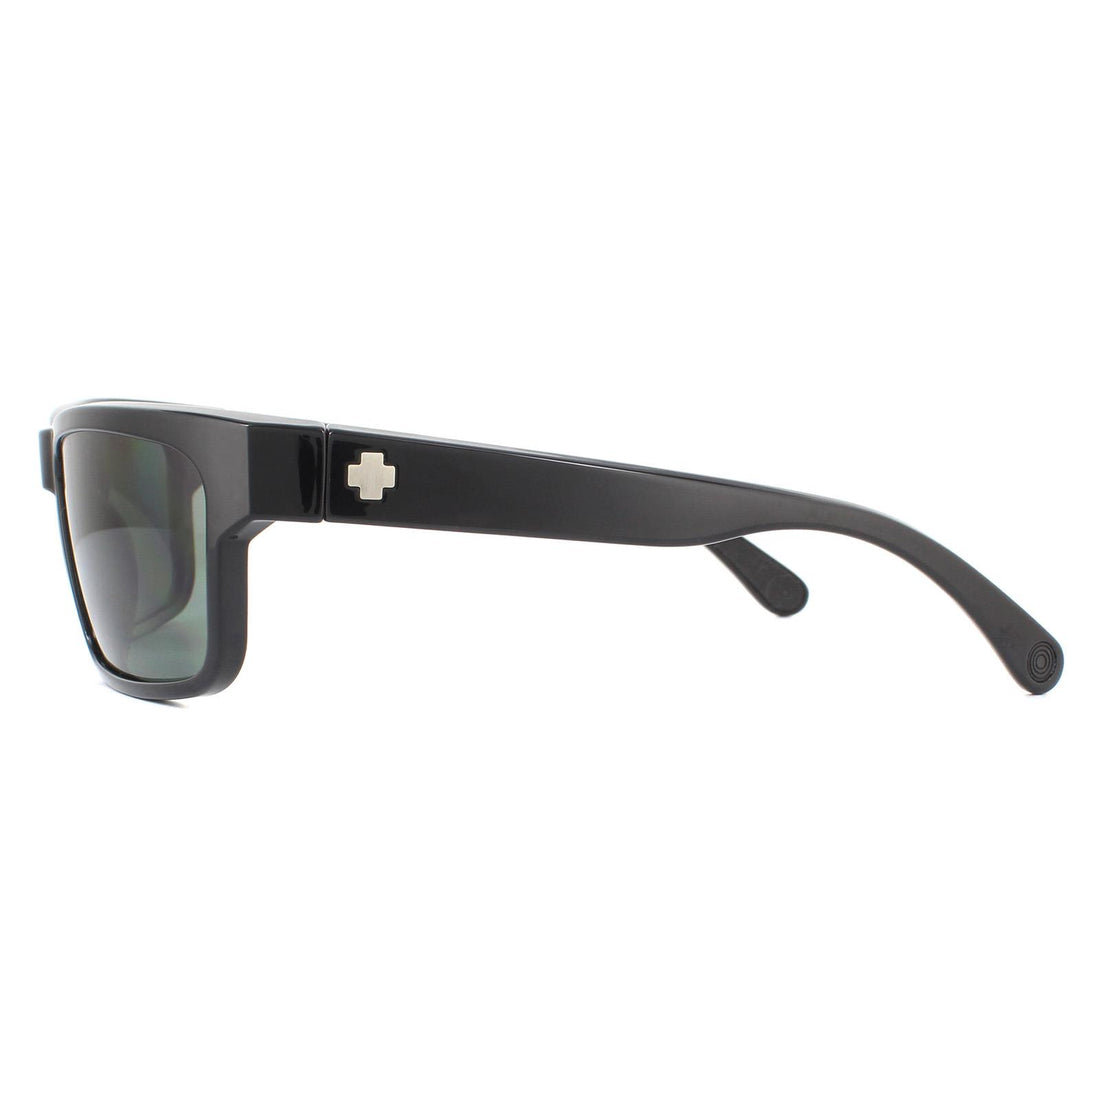 Spy Sunglasses Frazier 673176038864 Black Happy Grey Green Polarized